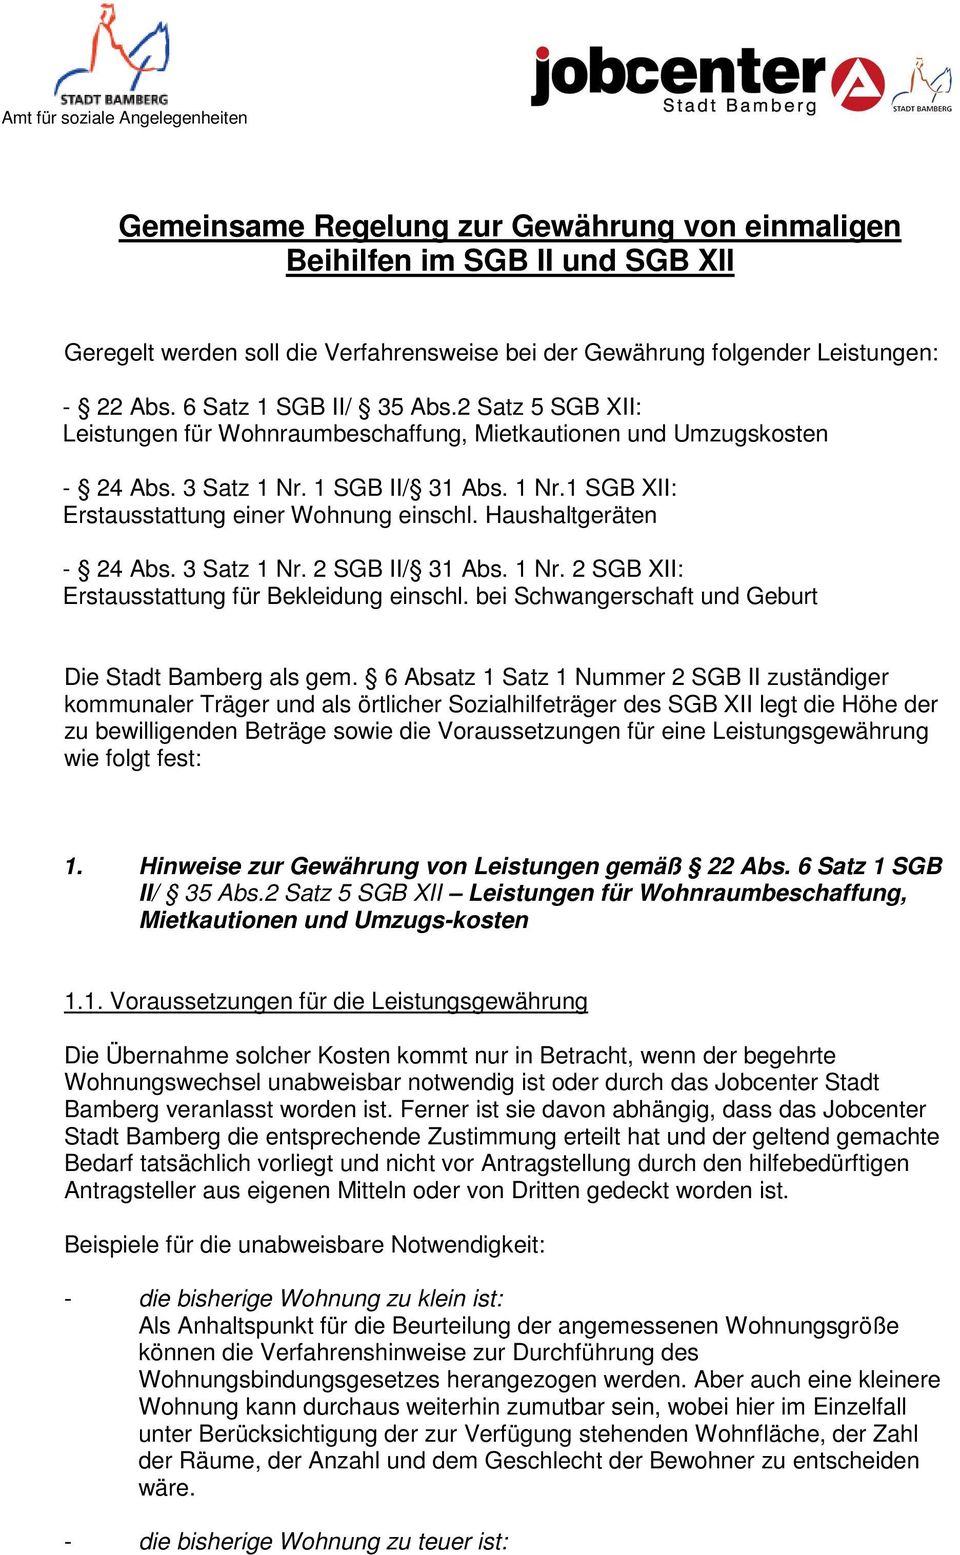 Haushaltgeräten - 24 Abs. 3 Satz 1 Nr. 2 SGB II/ 31 Abs. 1 Nr. 2 SGB XII: Erstausstattung für Bekleidung einschl. bei Schwangerschaft und Geburt Die Stadt Bamberg als gem.